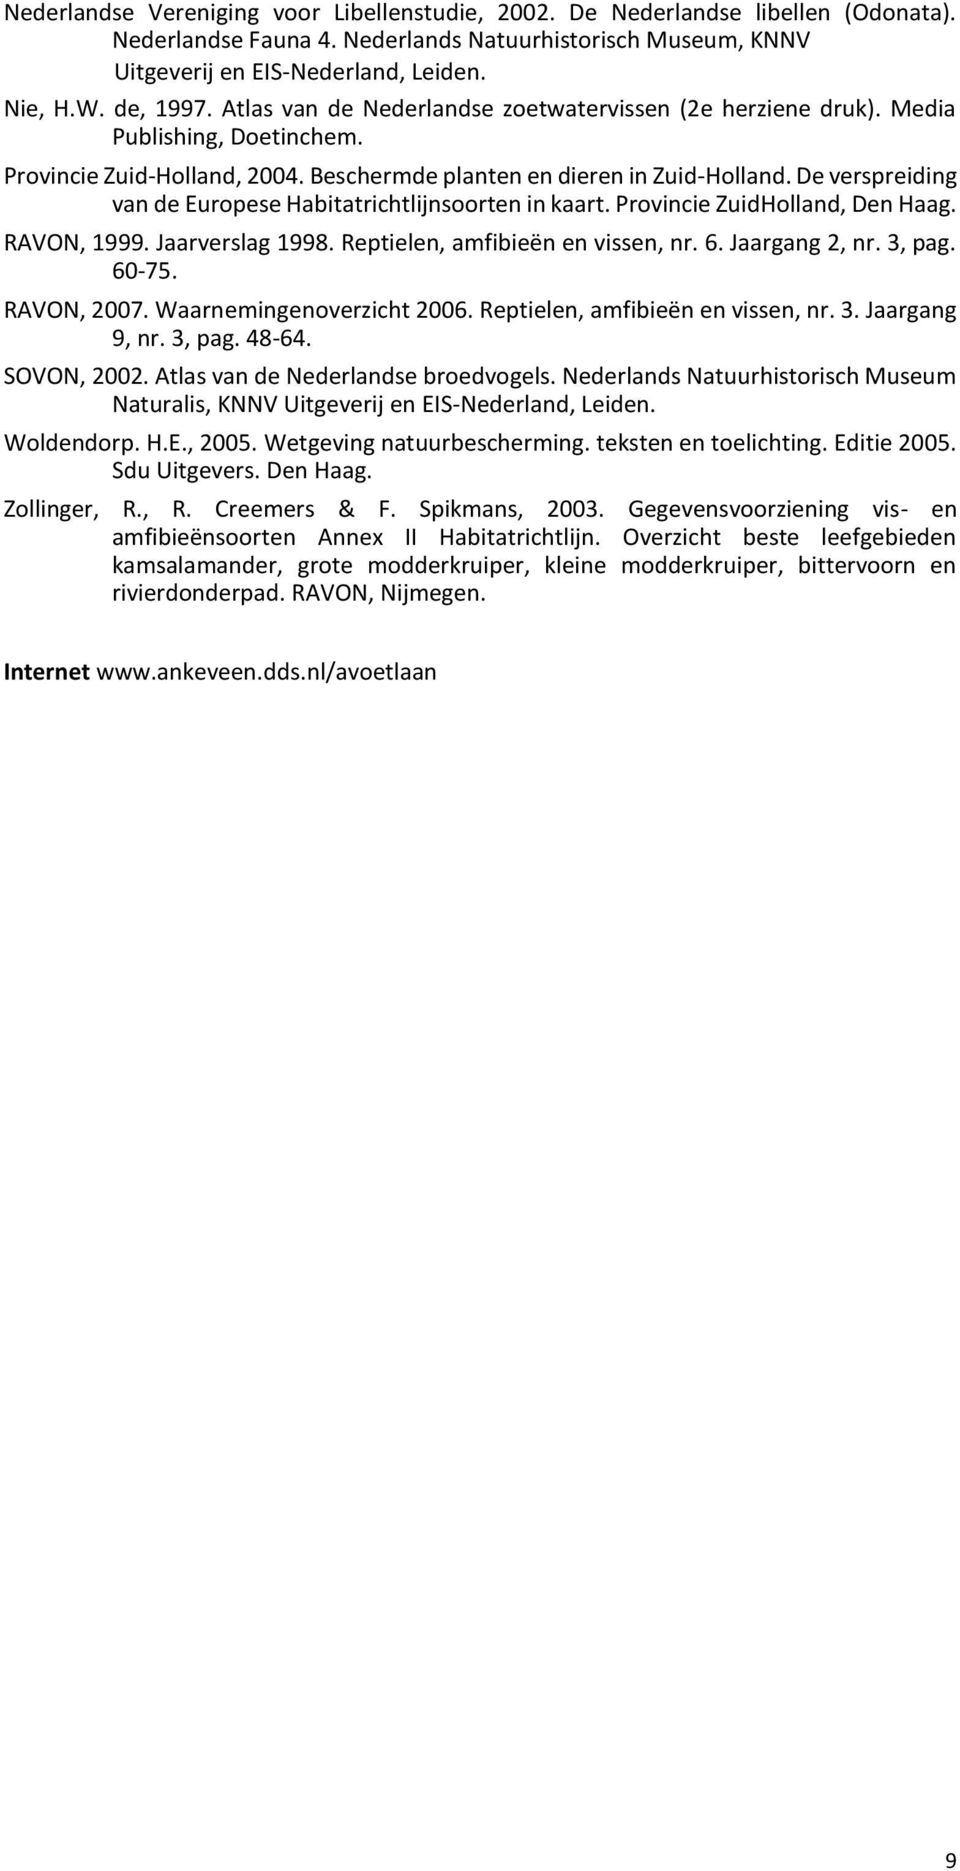 De verspreiding van de Europese Habitatrichtlijnsoorten in kaart. Provincie ZuidHolland, Den Haag. RAVON, 1999. Jaarverslag 1998. Reptielen, amfibieën en vissen, nr. 6. Jaargang 2, nr. 3, pag. 60-75.